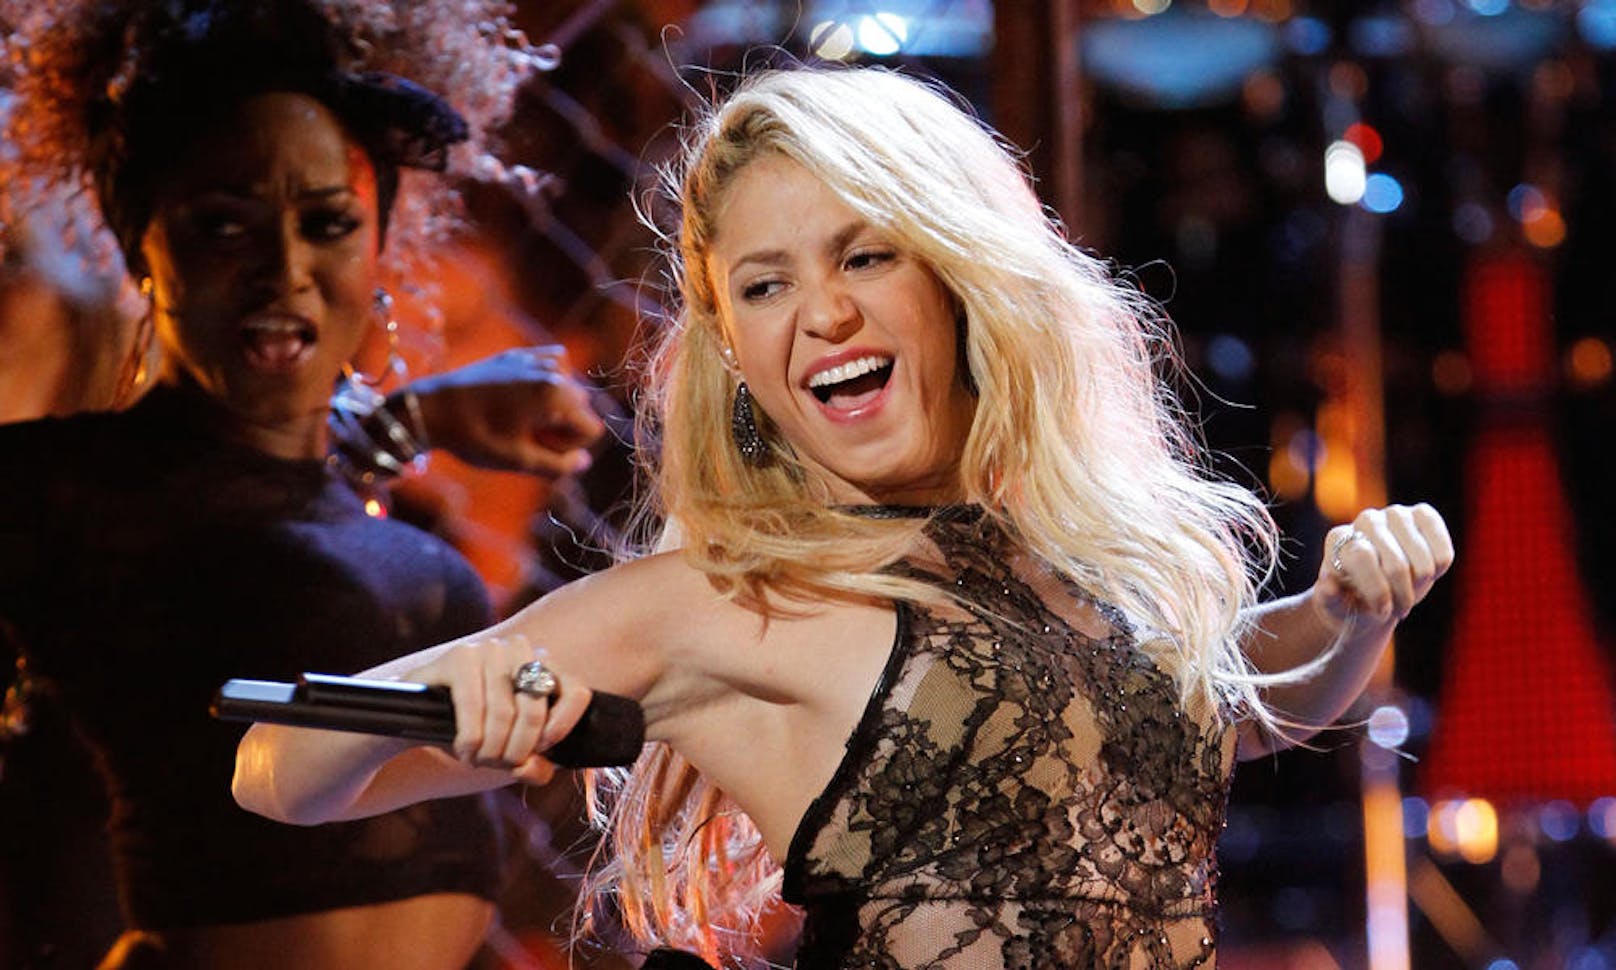 <strong>PLATZ 7</strong>: Auf der Bühne heizt Sängerin <strong>Shakira</strong> ihrem Publikum mit feurigen Rhythmen ein. Bei ihr kraxelt der IQ-Wert ebenfalls auf 140.